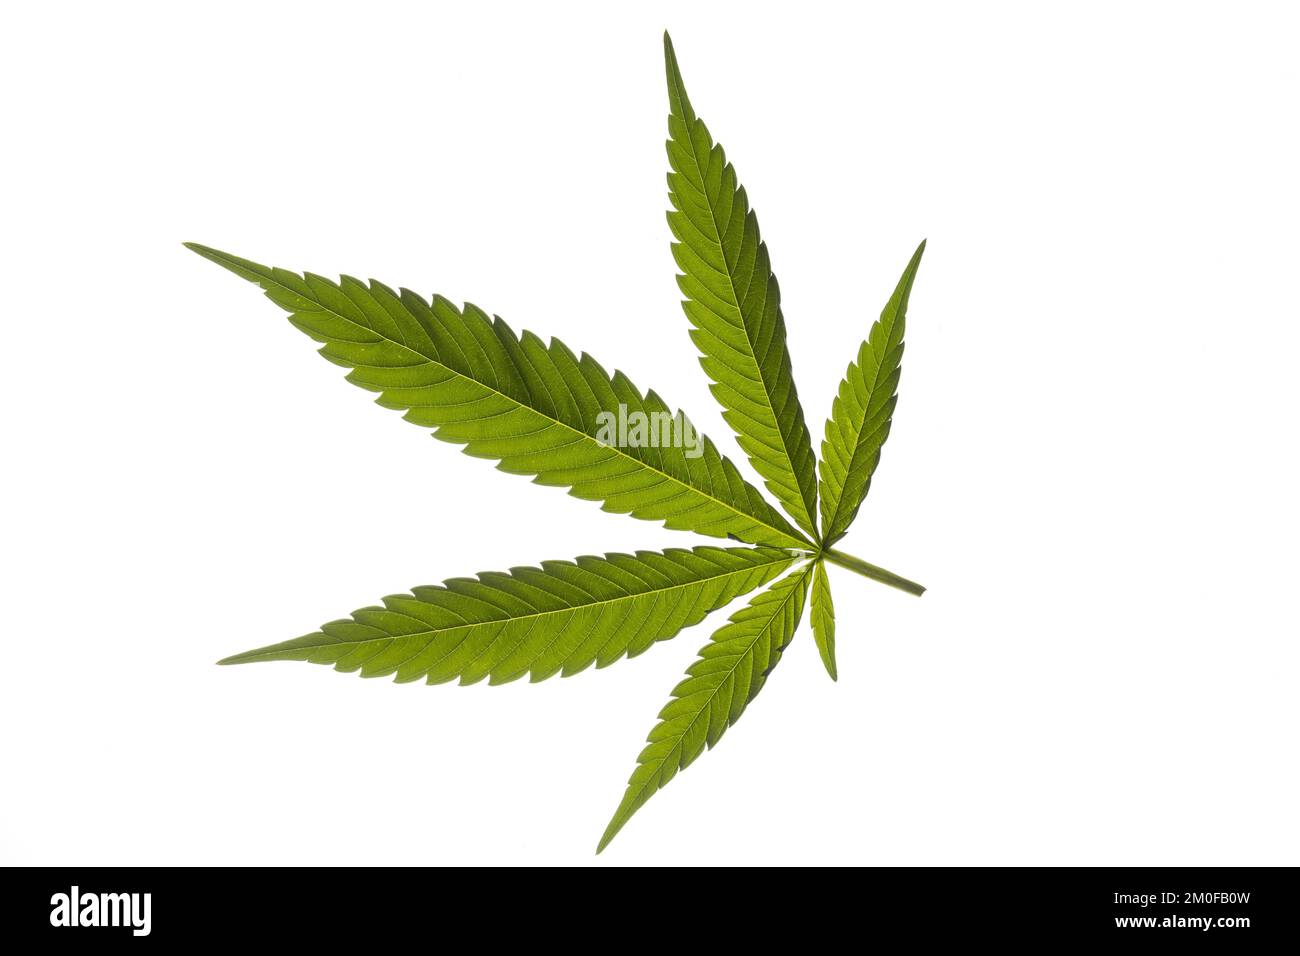 Chanvre indien, marijuana, mary jane (Cannabis sativa), feuille de chanvre, découpe Banque D'Images